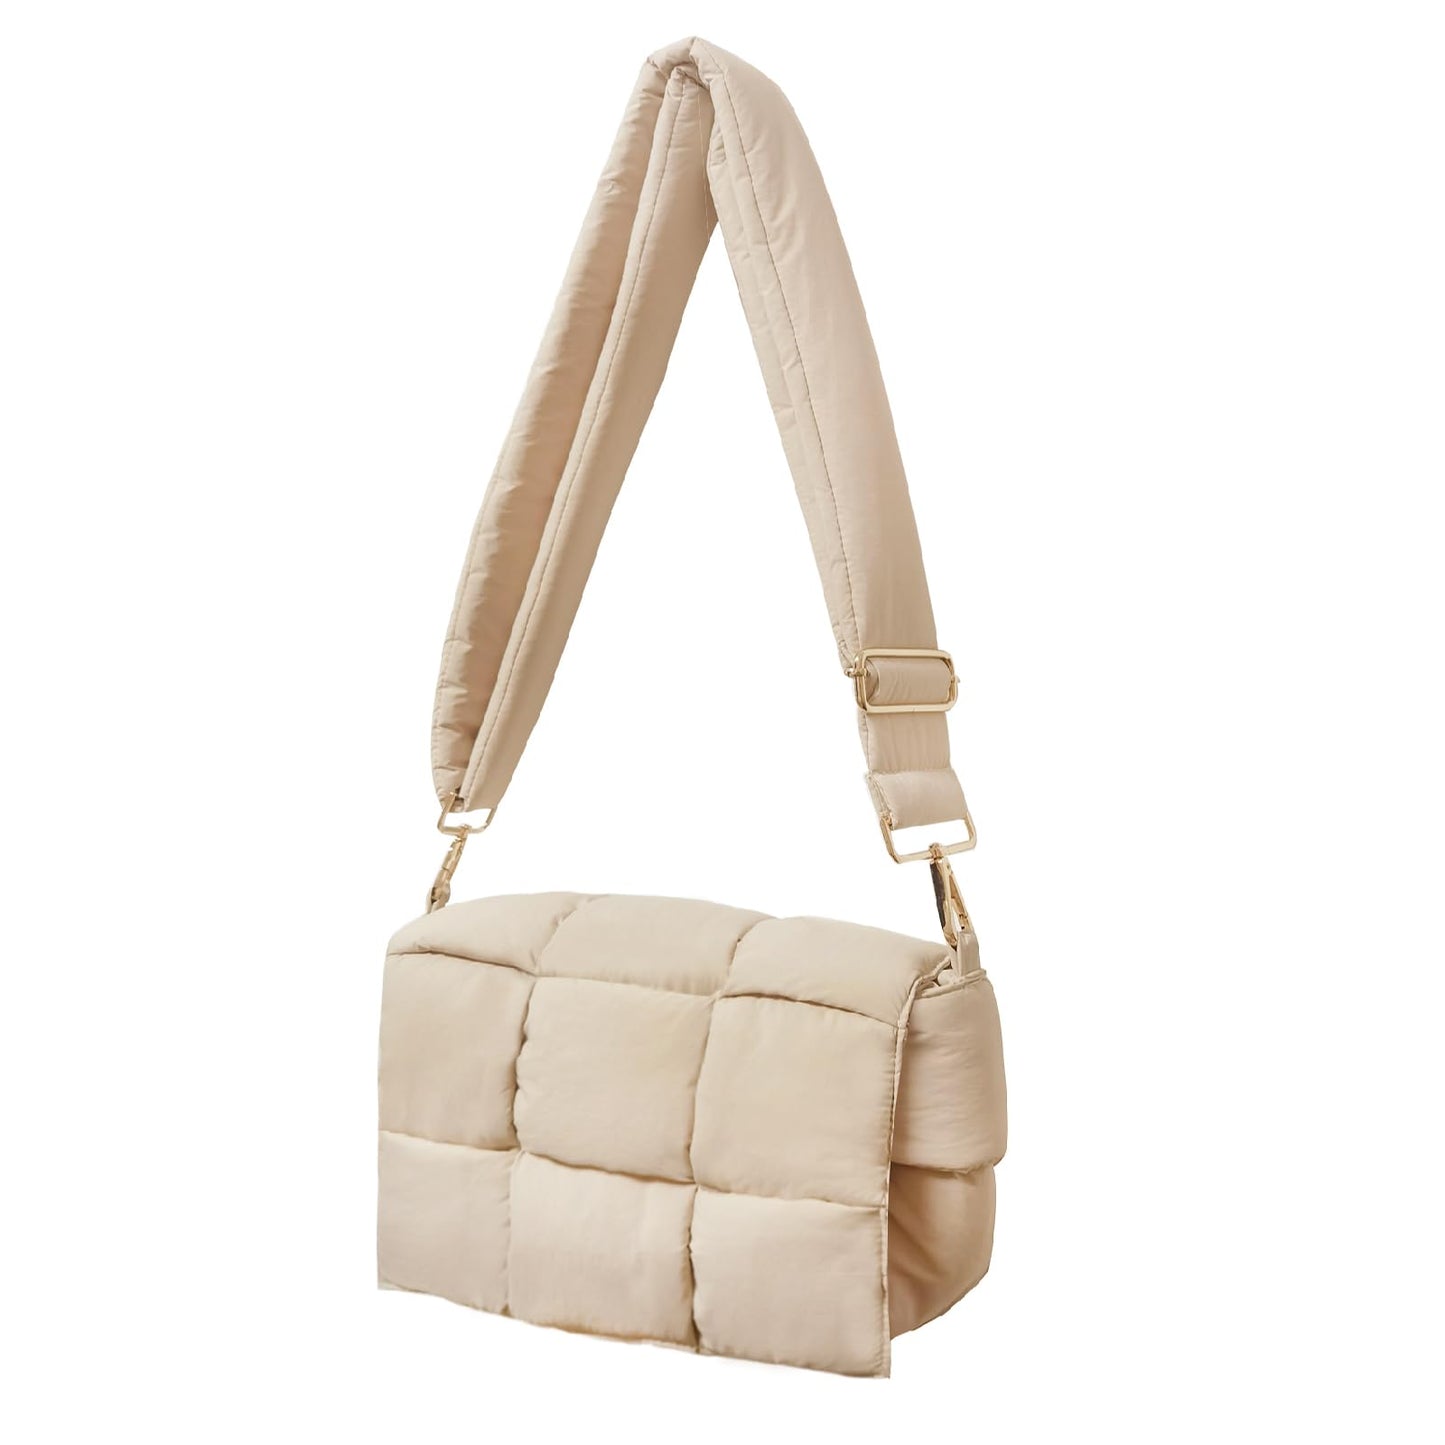 PRODUCTO 707-1 NAARIIAN Bolso de hombro acolchado de nailon tejido bolso cruzado de diseñador dupes bolso de mujer (beige)